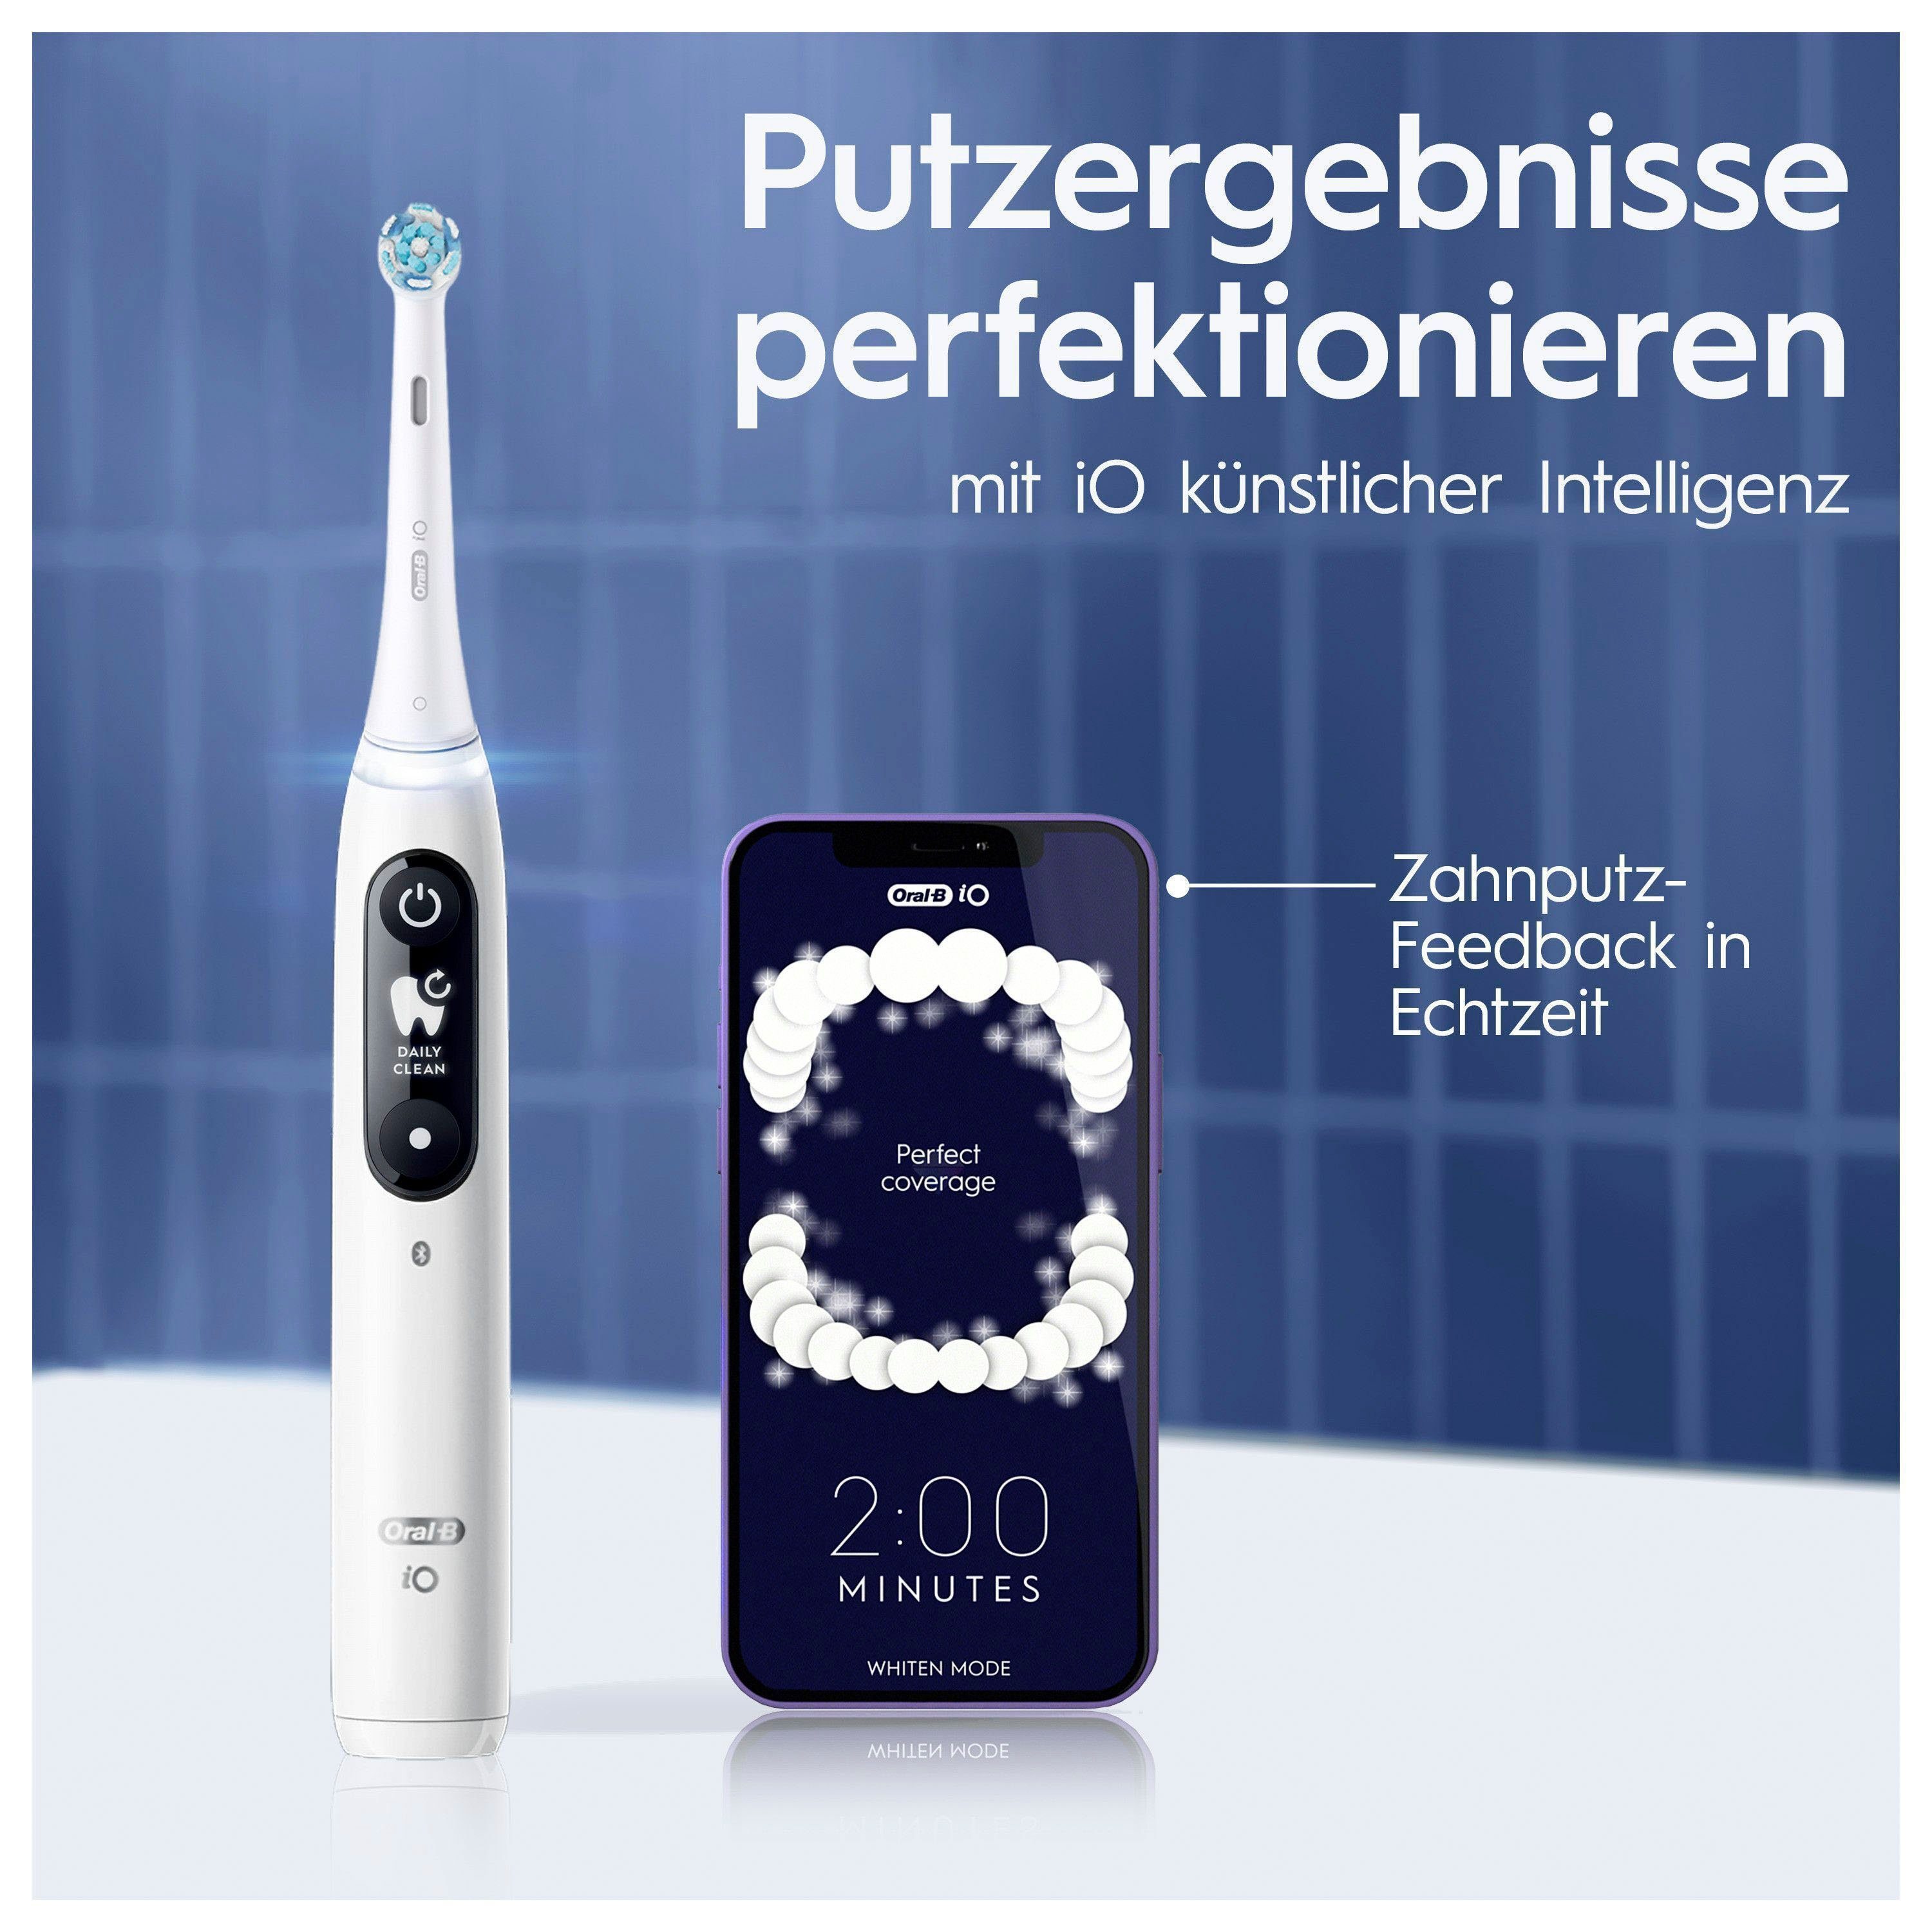 Oral-B Elektrische Zahnbürste iO 7, alabaster Reiseetui Aufsteckbürsten: Display, Magnet-Technologie, white 5 St., Putzmodi, 2 mit